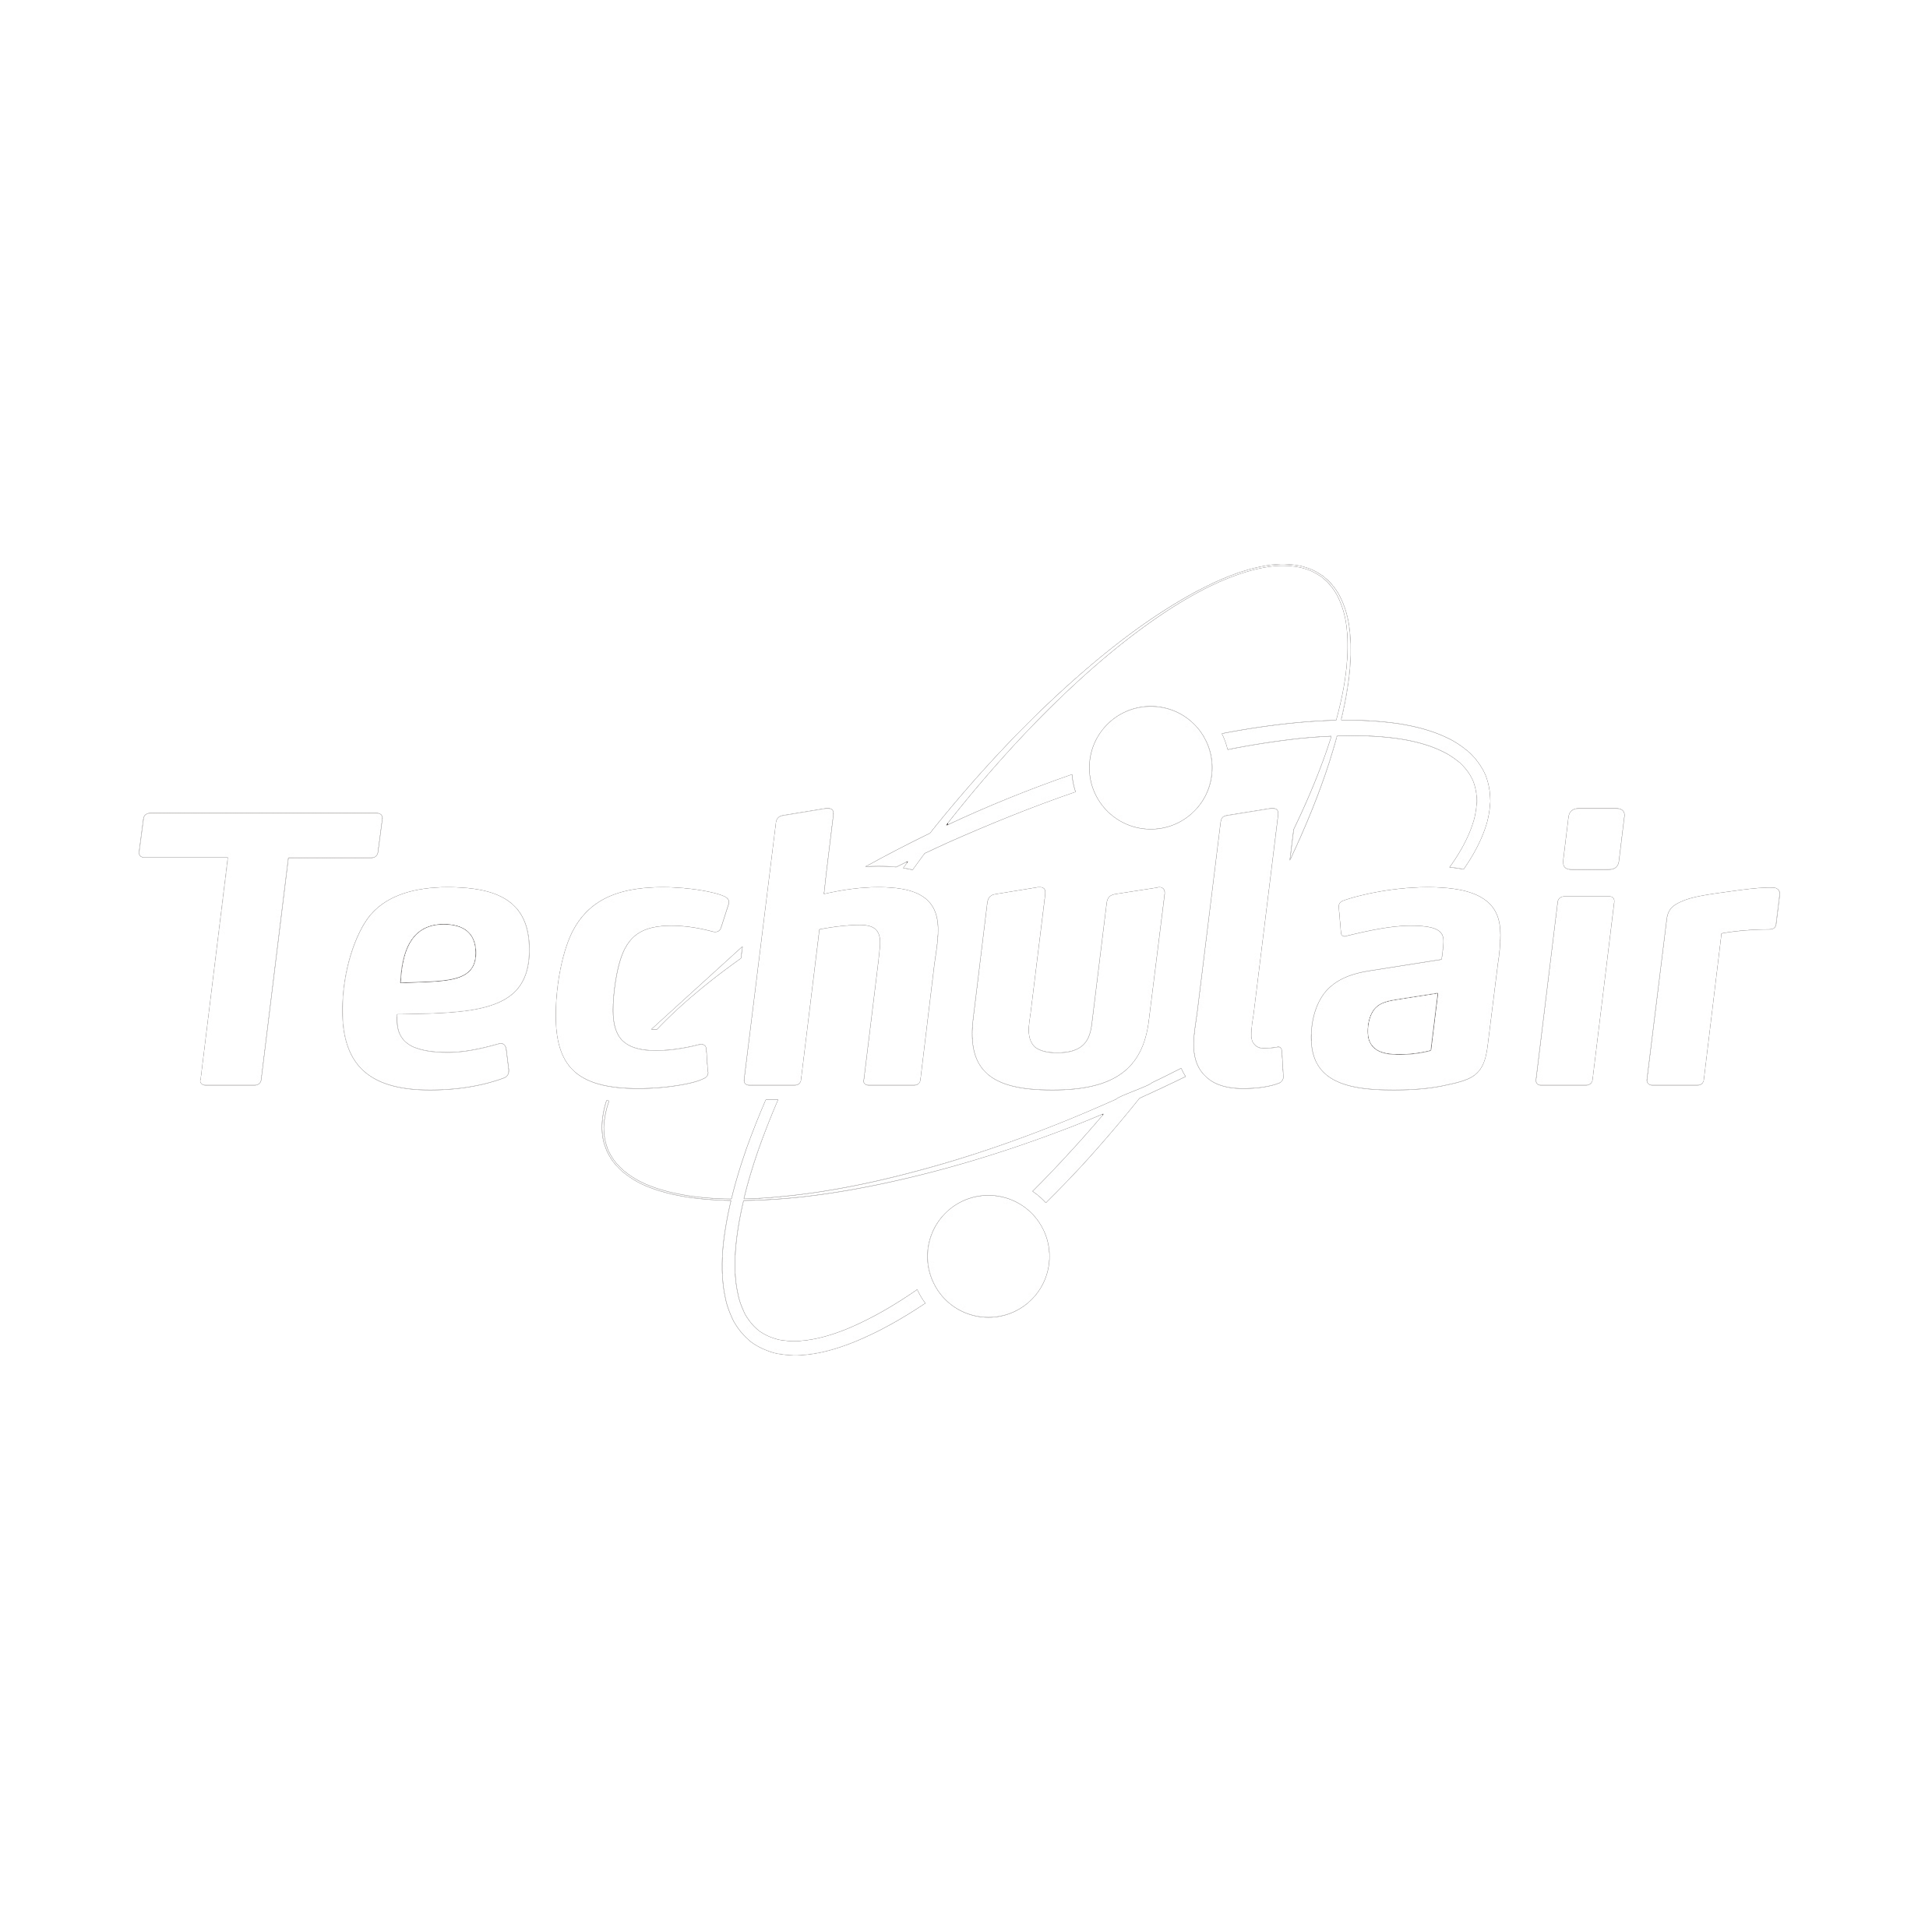 Techulair